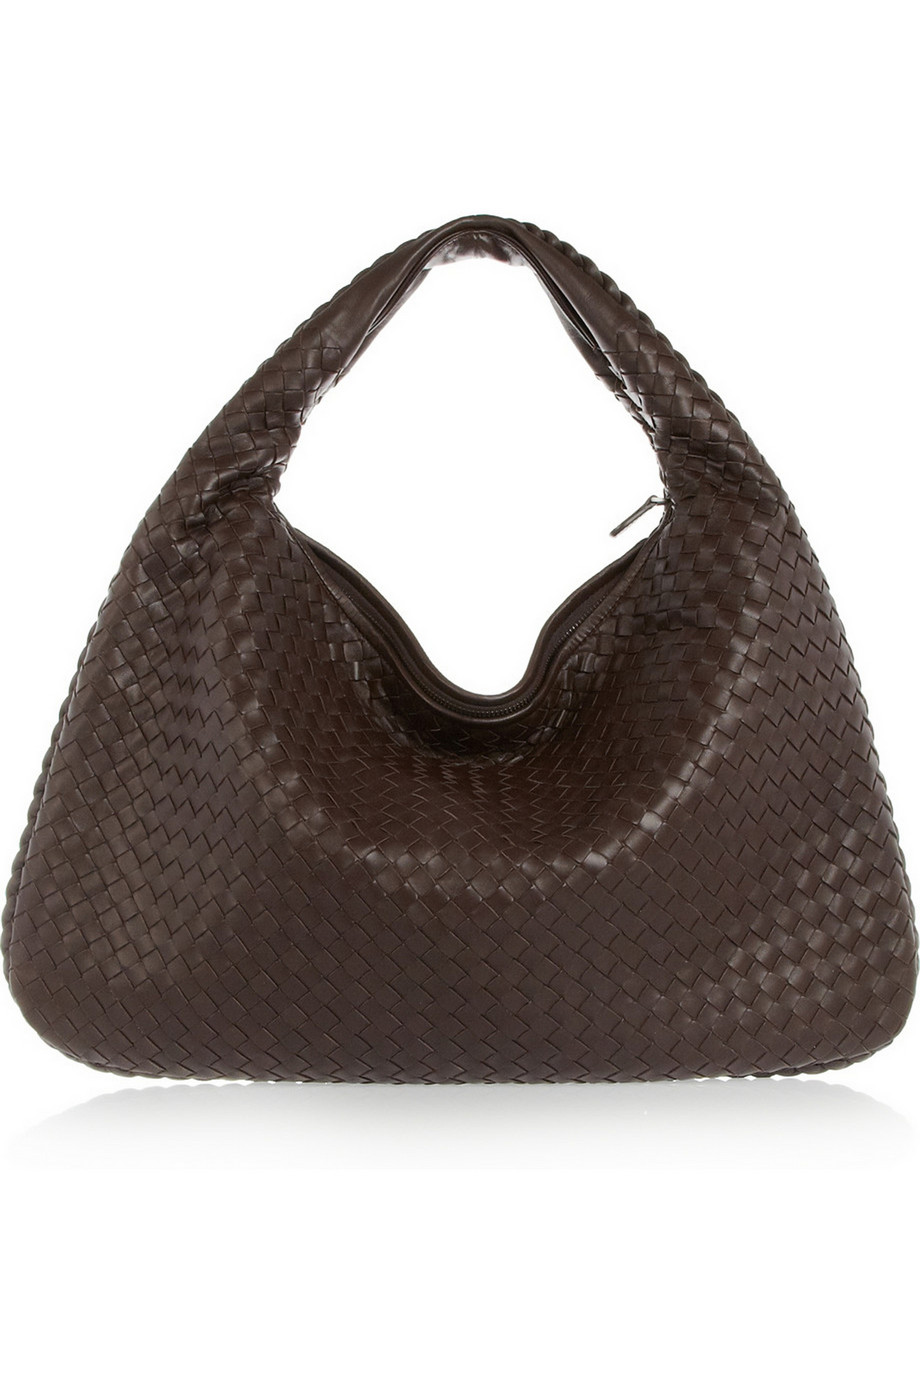 Bottega Veneta Large Veneta Intrecciato Leather Shoulder Bag in Brown